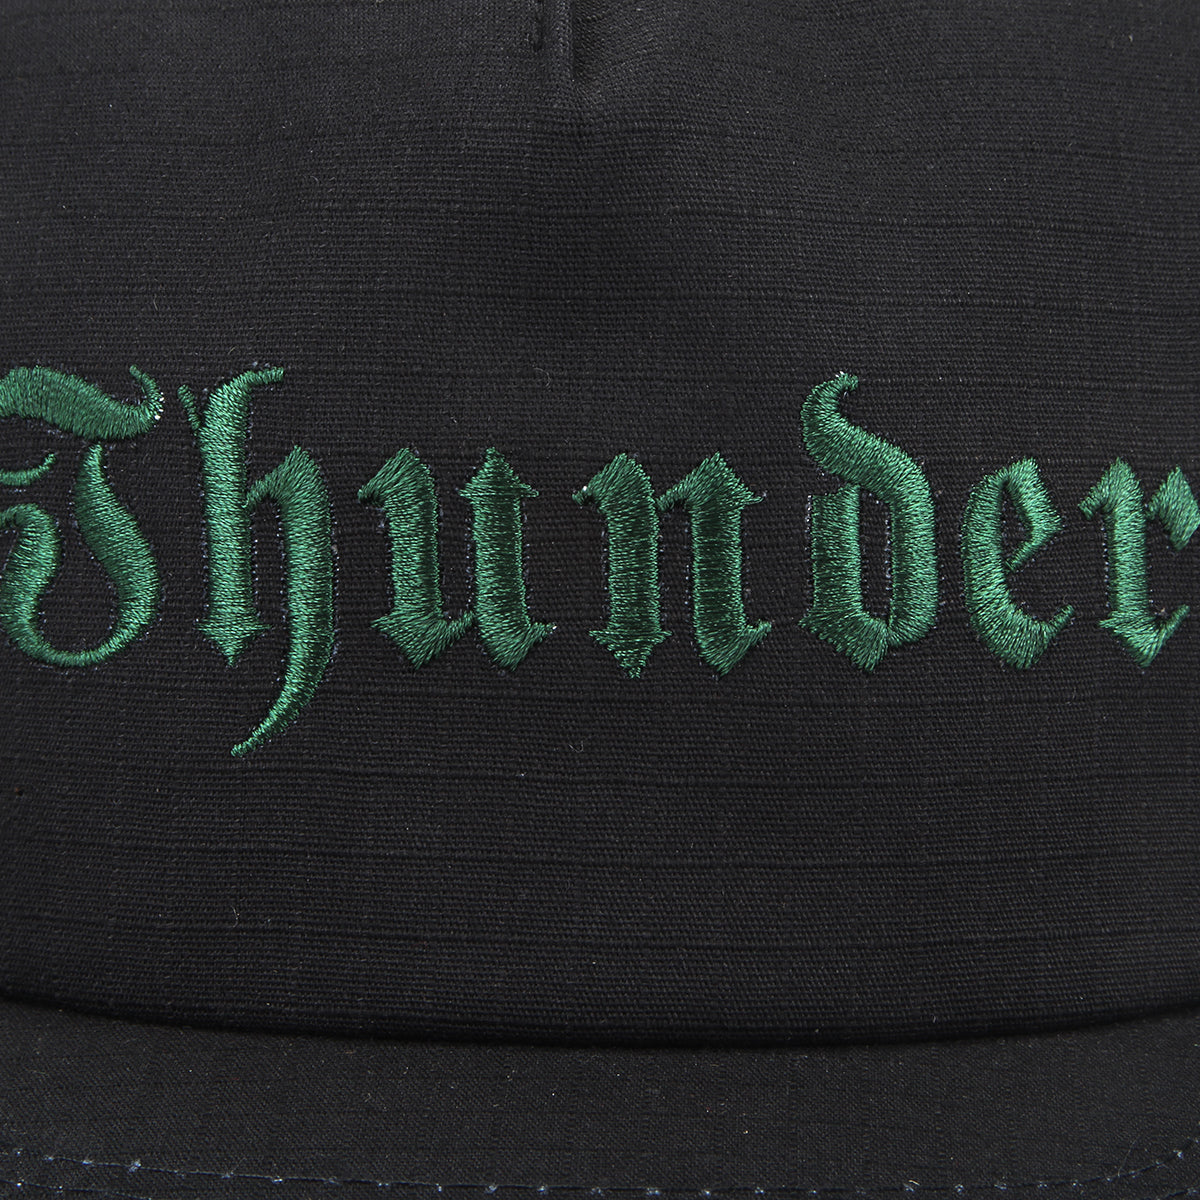 Thunder | Script Snapback Hat Black / Dark Green